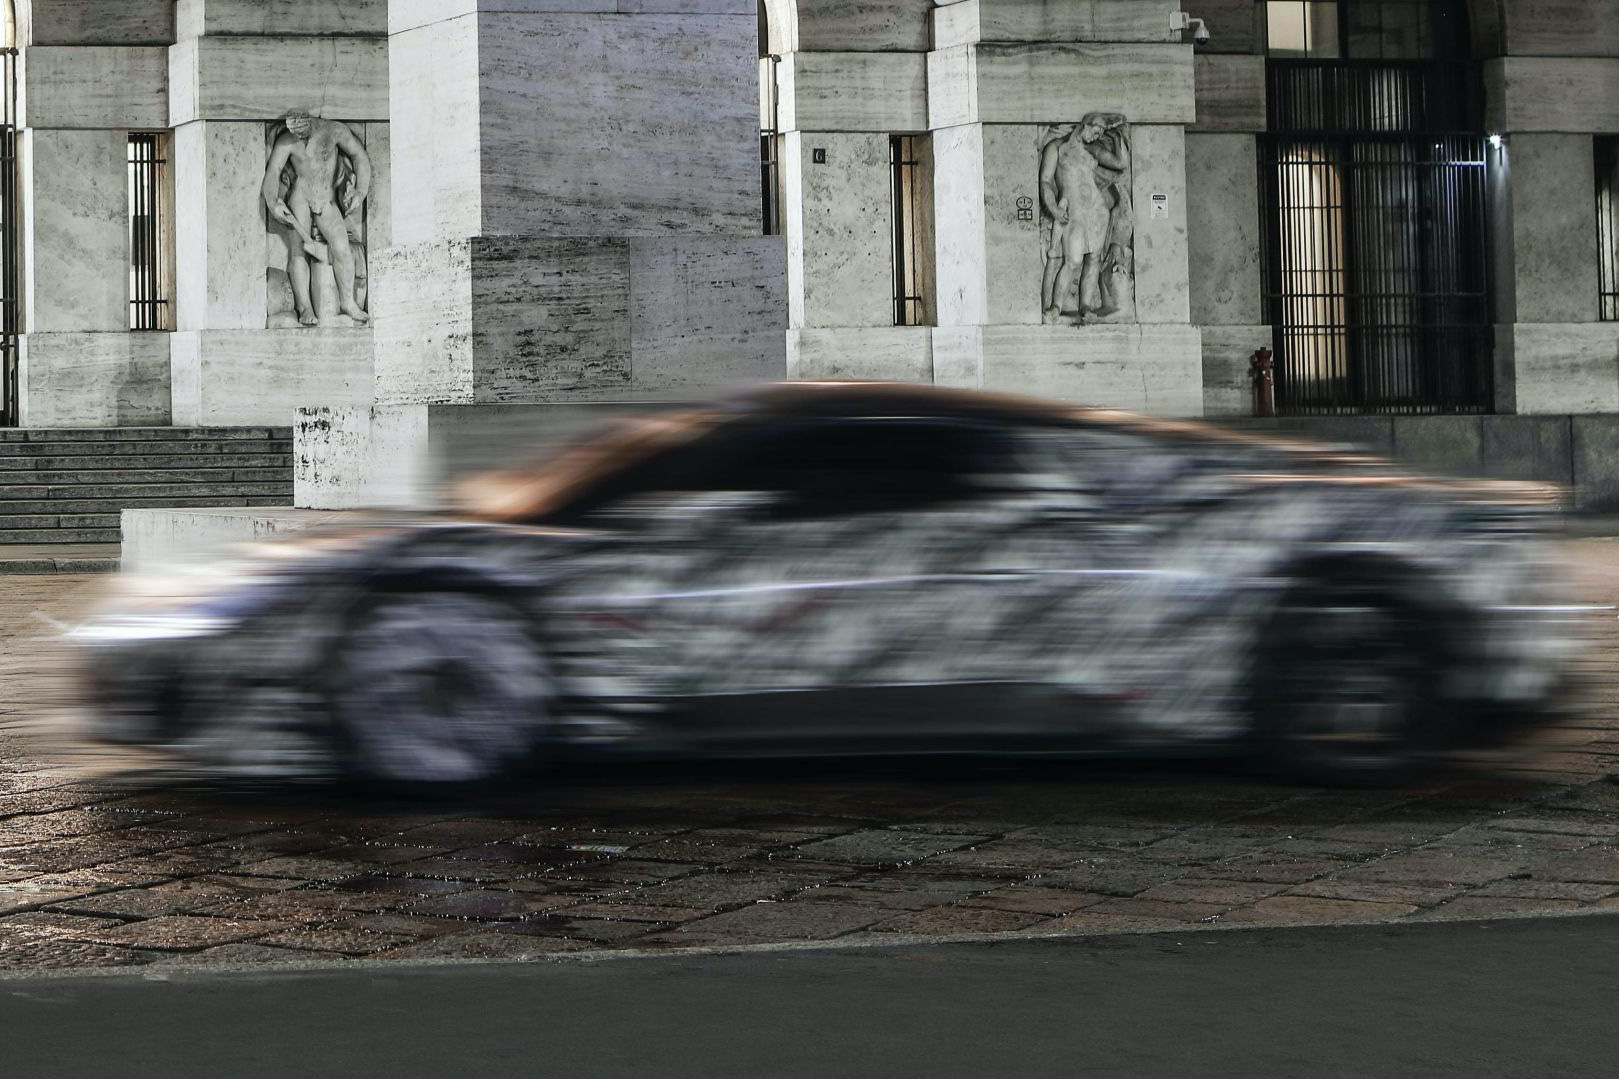 Bá đạo như Maserati: Lộ ảnh xe mới nhoè nhoẹt nhưng bức tượng phía sau mới là đỉnh cao cà khịa